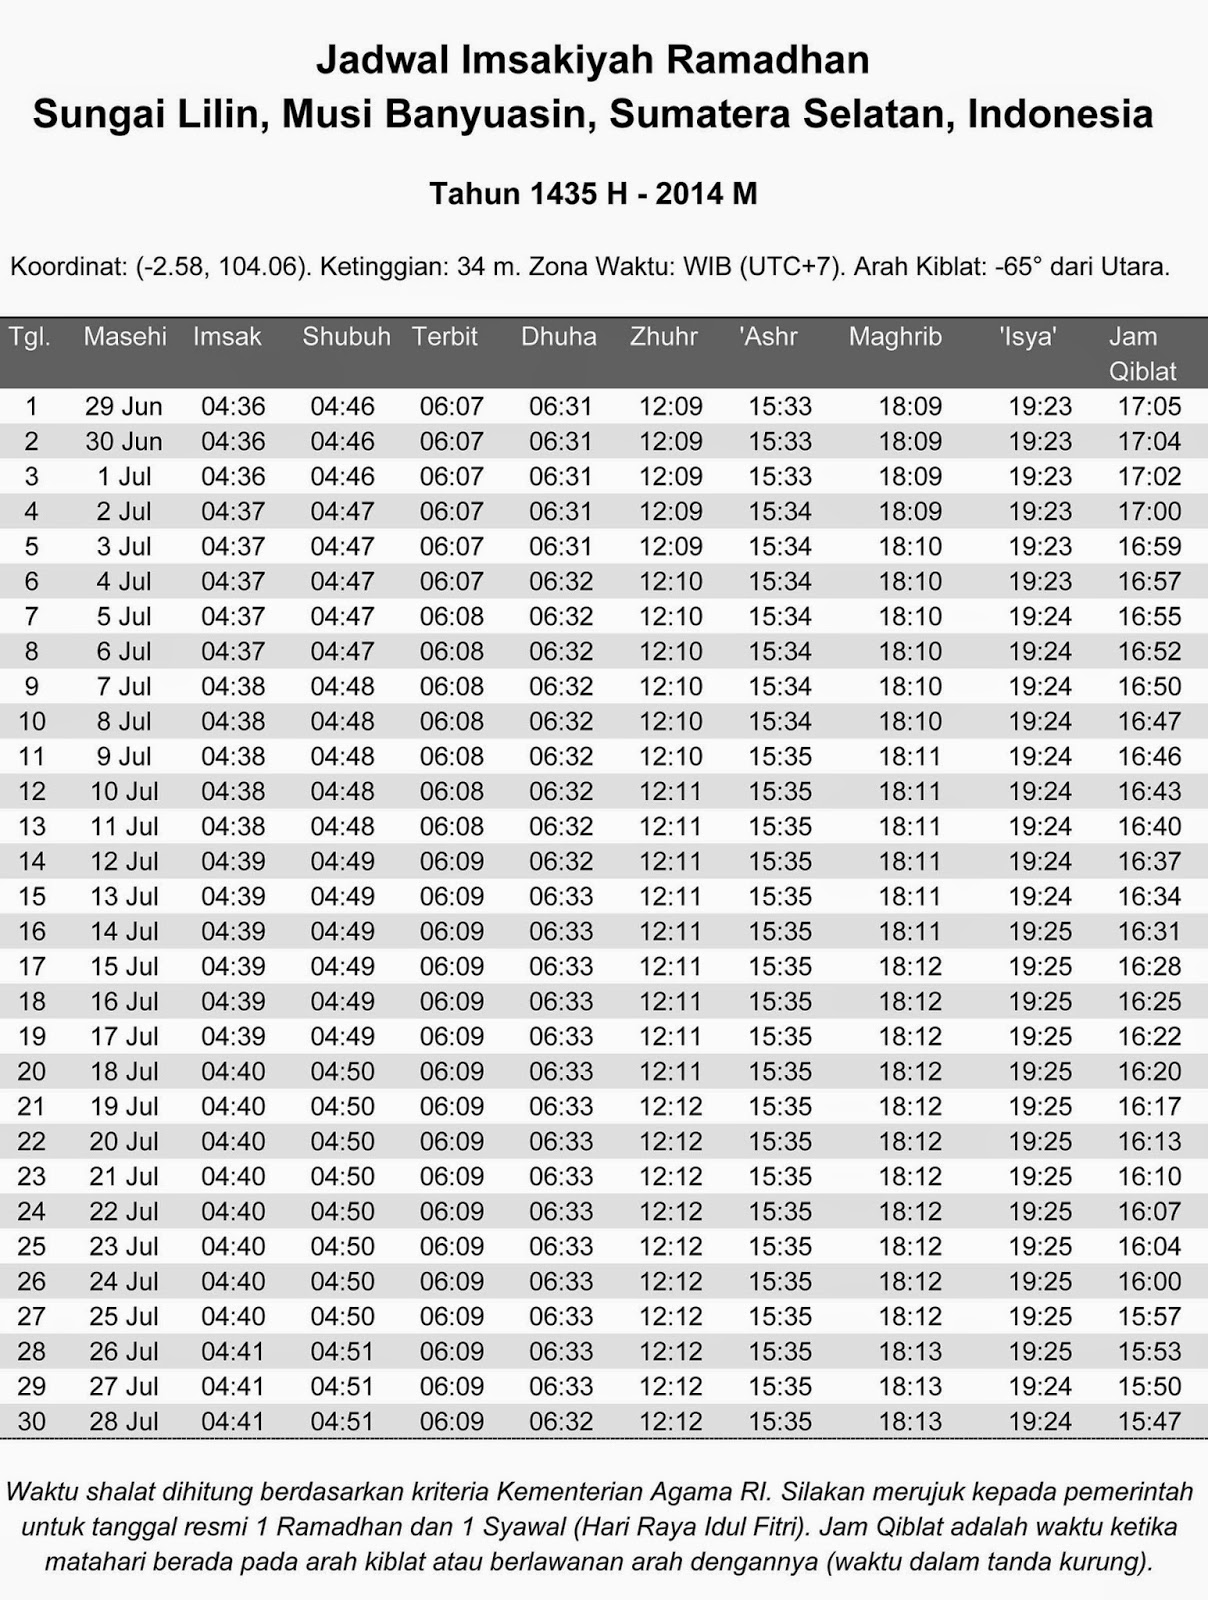 Jadwal Imsakiyah Puasa Ramadhan 1435H/2014 Wilayah 